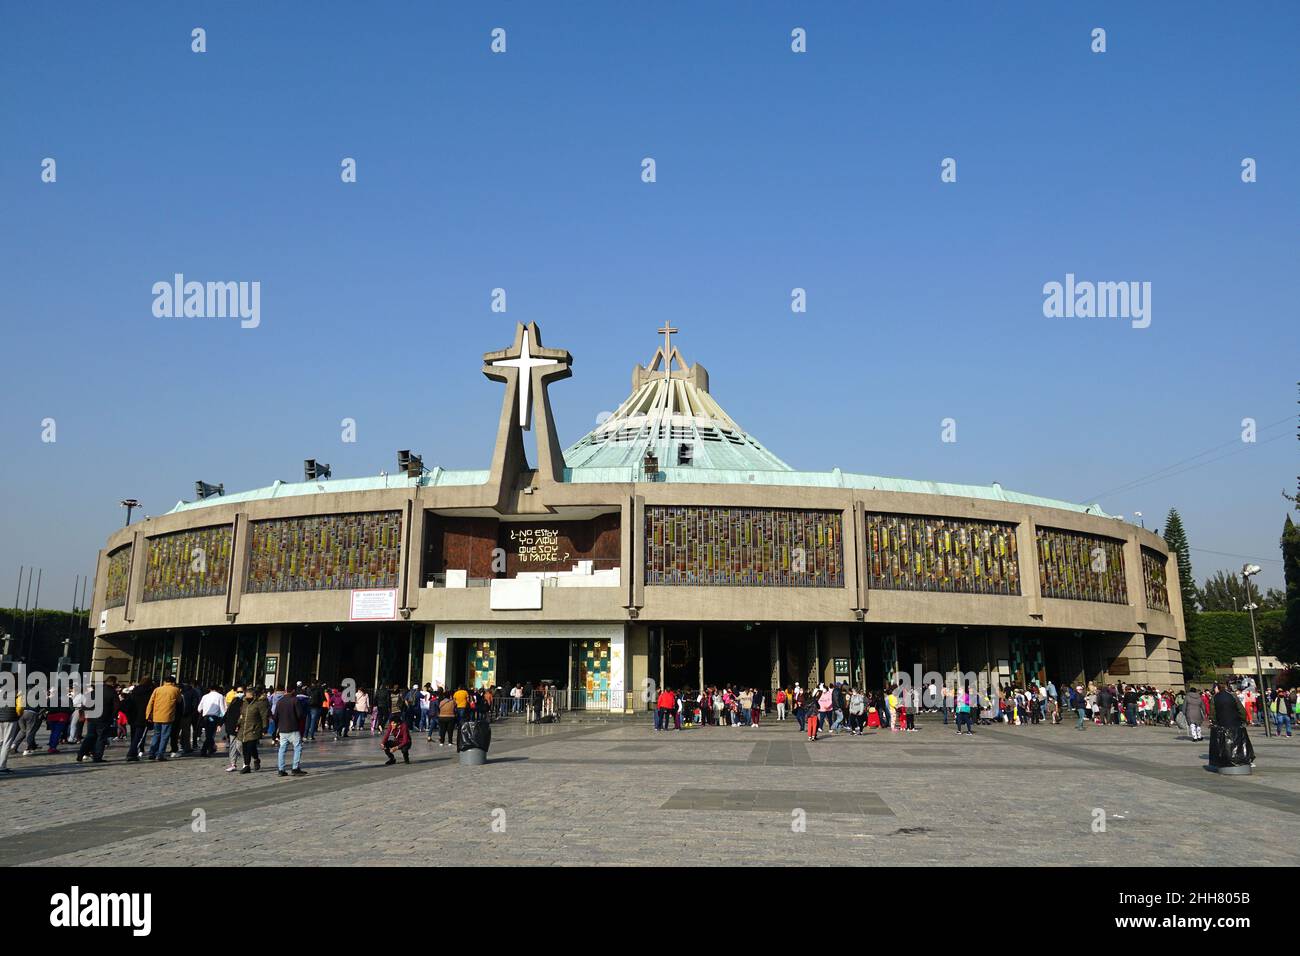 New Basilica, Basilica of Our Lady of Guadalupe, Basílica de Nuestra Señora de Guadalupe, Mexico City, Ciudad de México, Mexico, North America Stock Photo